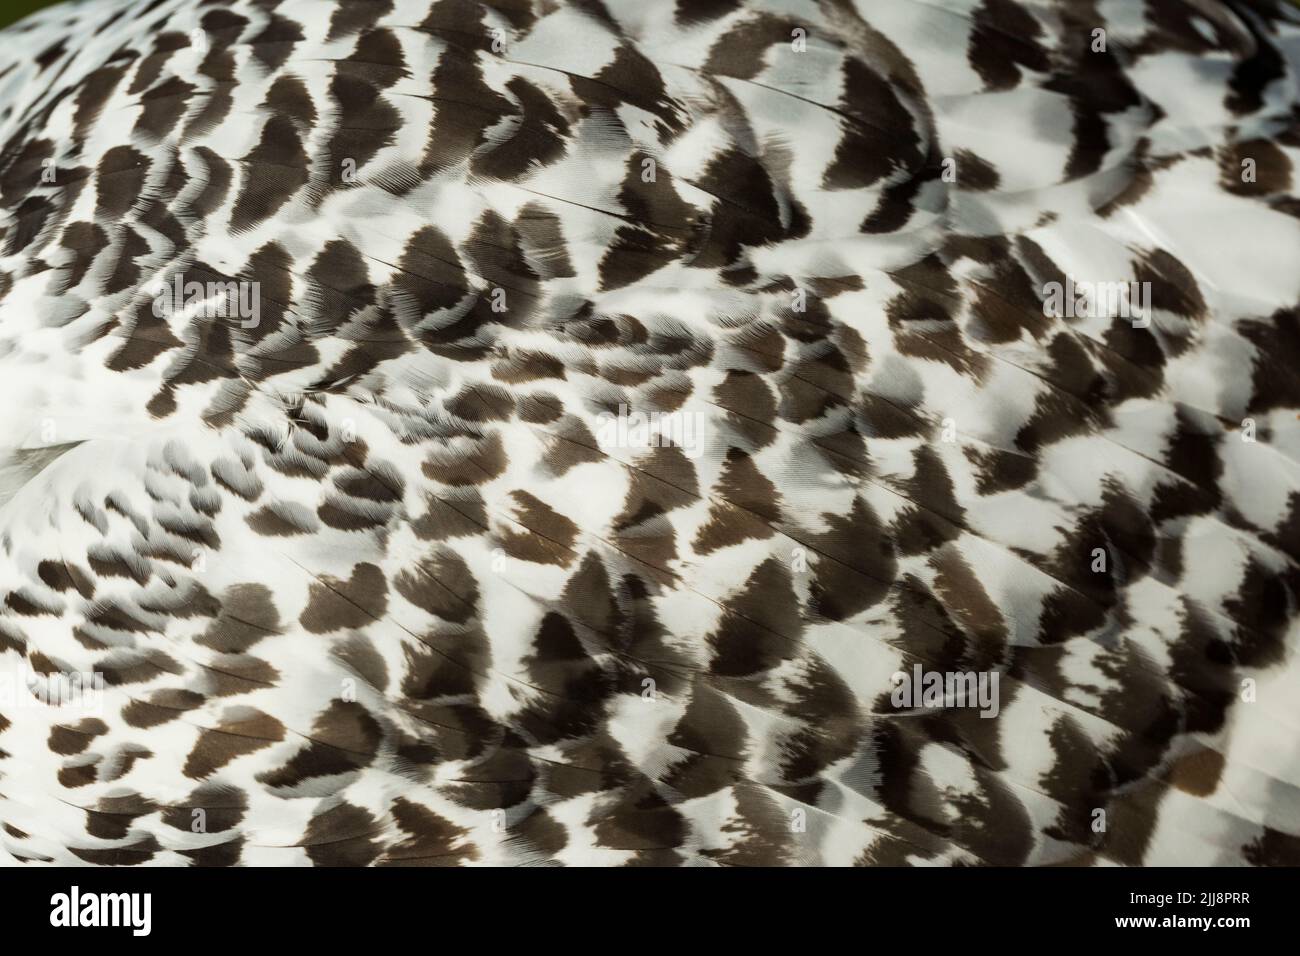 Hibou des neiges Bubo scandiacus (captif), femme, gros plan sur les plumes d'ailes, Hawk Conservancy Trust, Hampshire, Royaume-Uni, novembre Banque D'Images